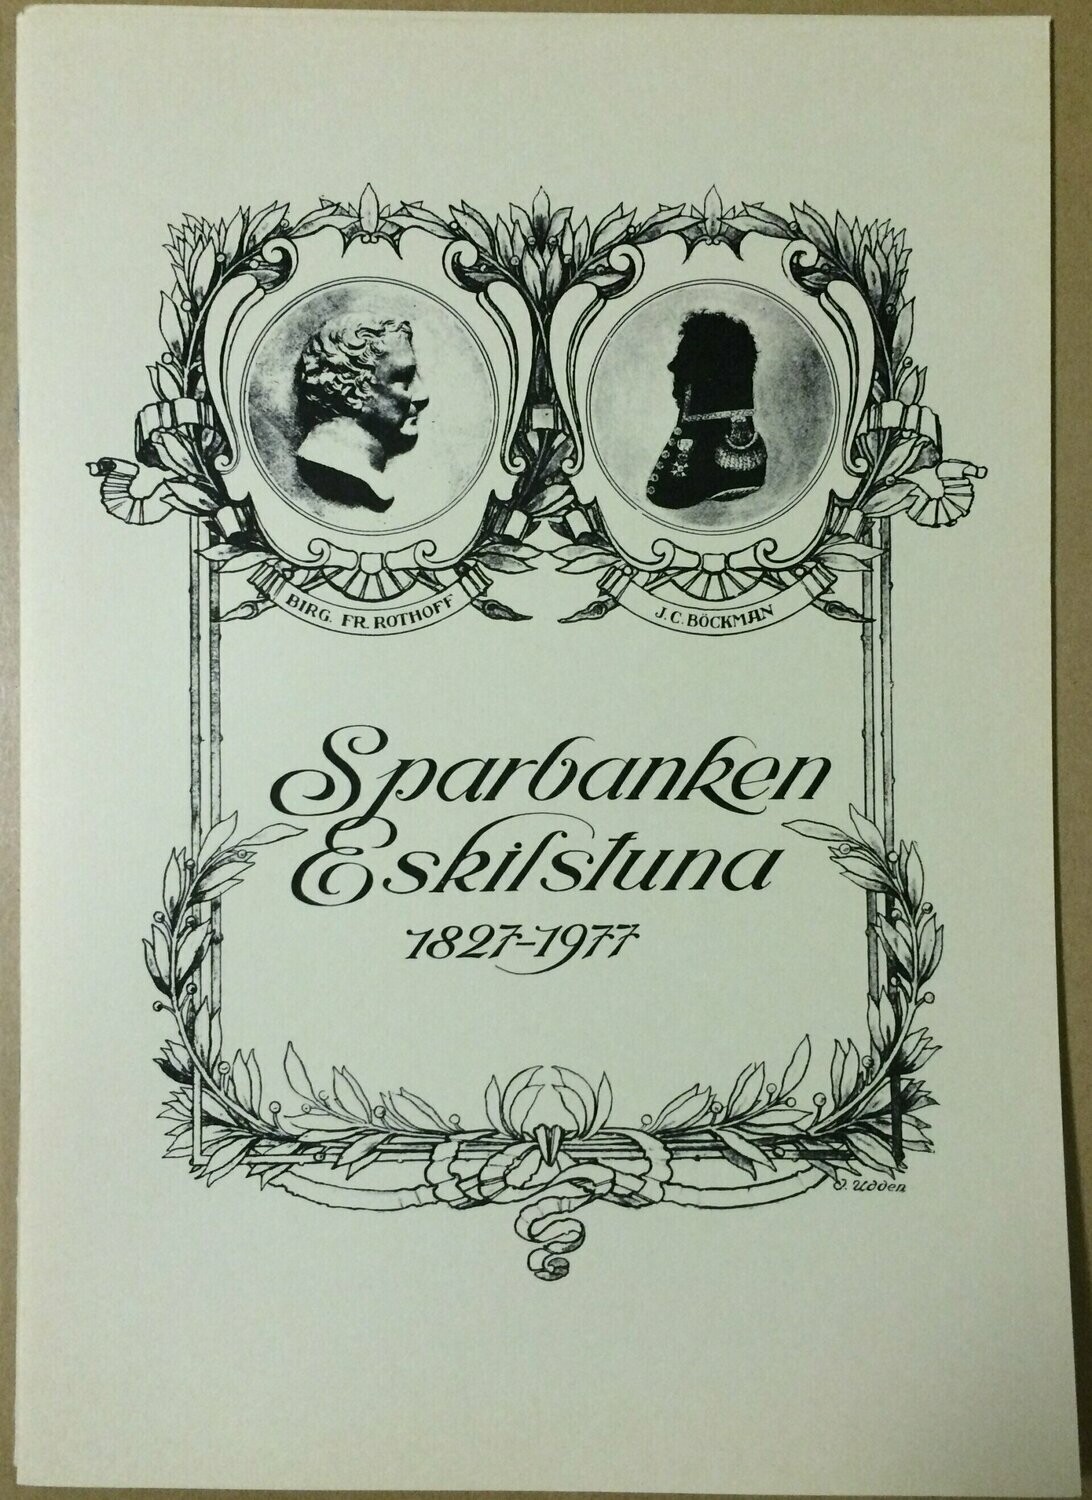 Sparbanken Eskilstuna 1827-1977